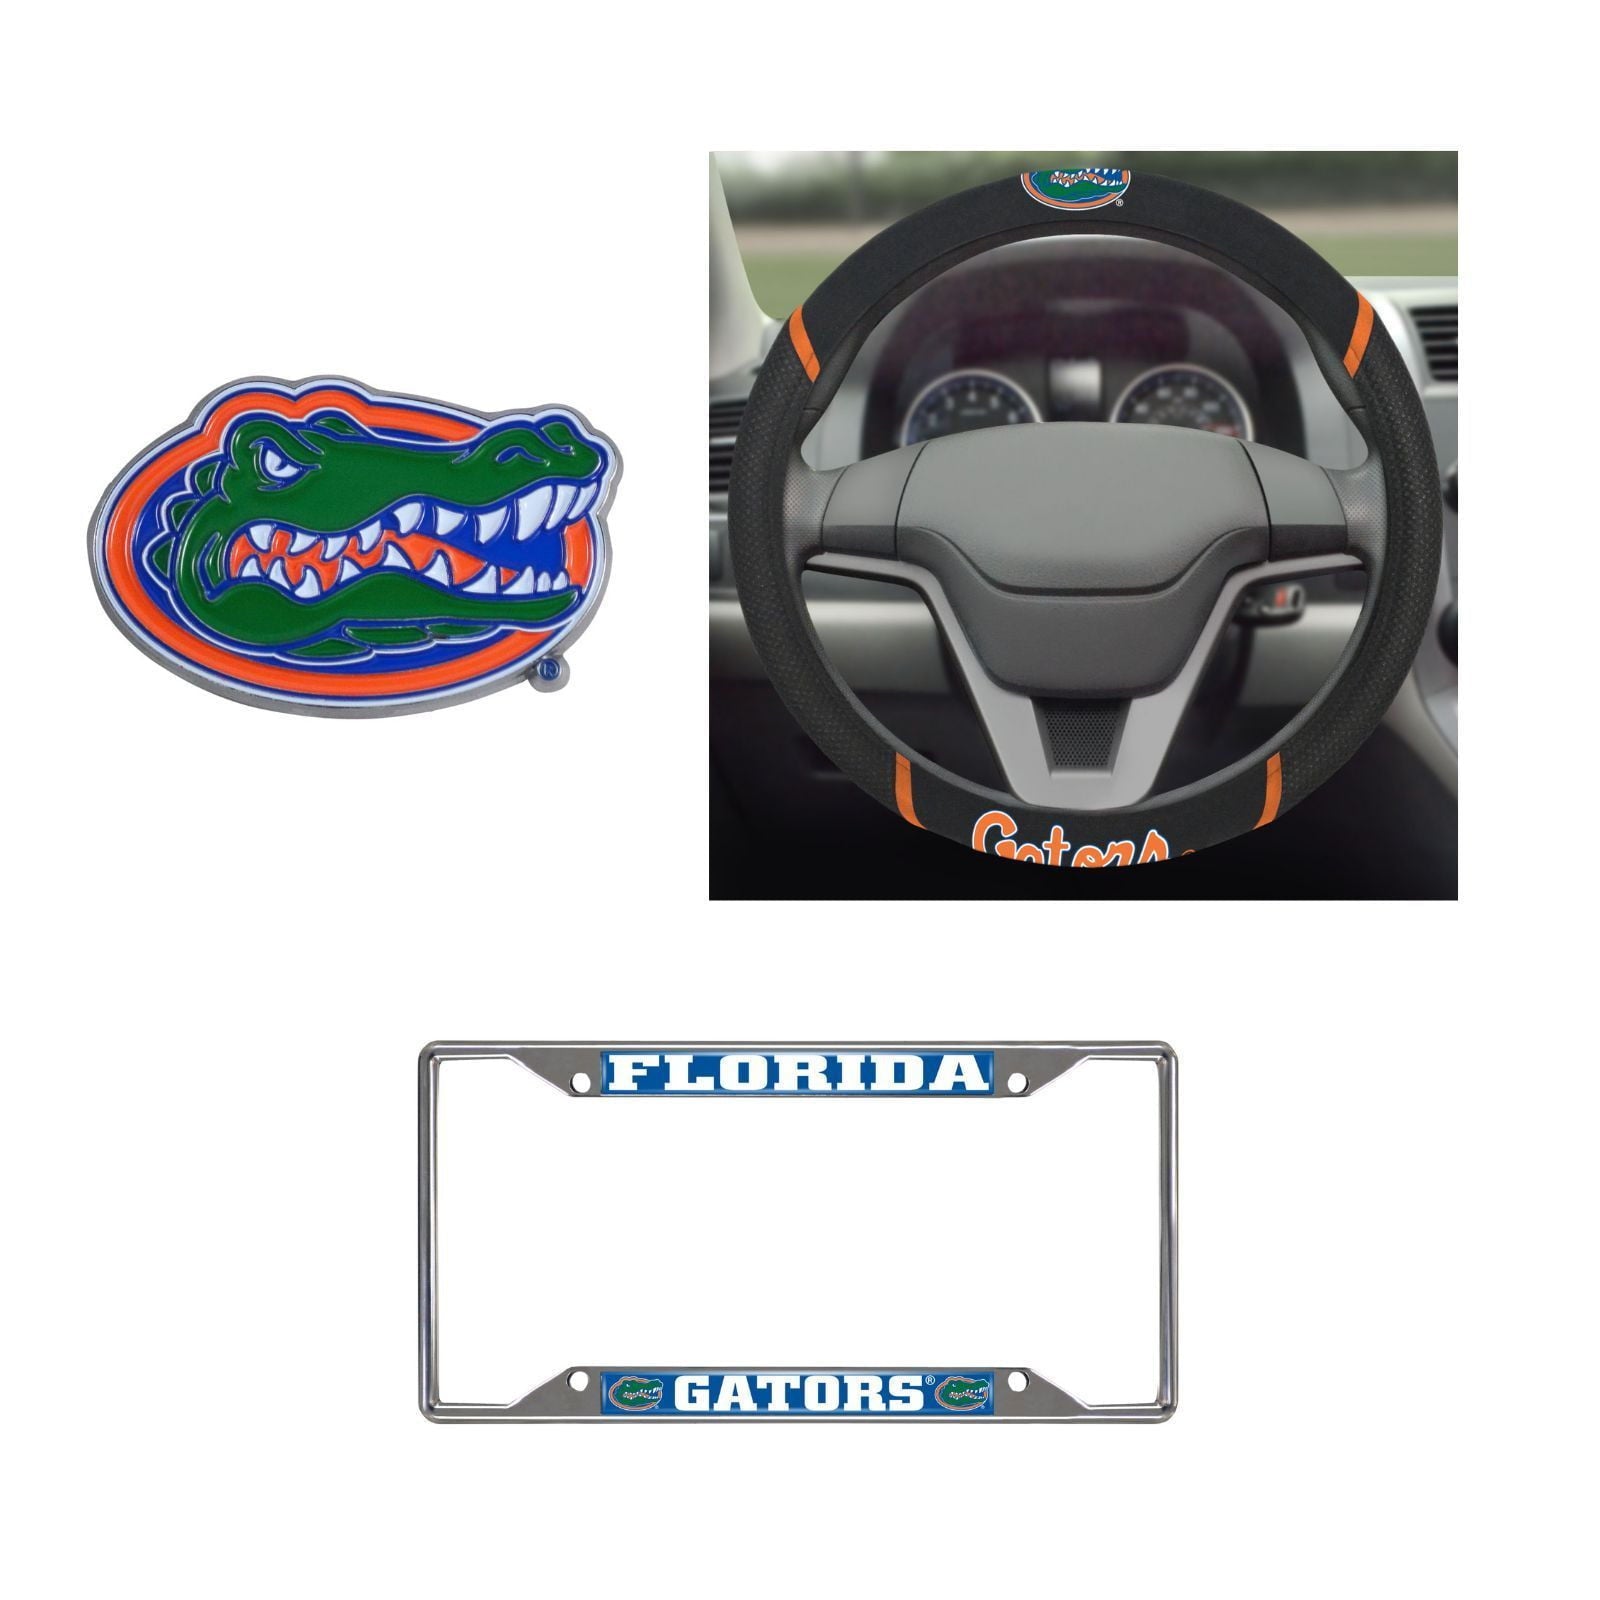 Florida Gators Steering Wheel Cover, License Plate Frame, 3D Color Emblem